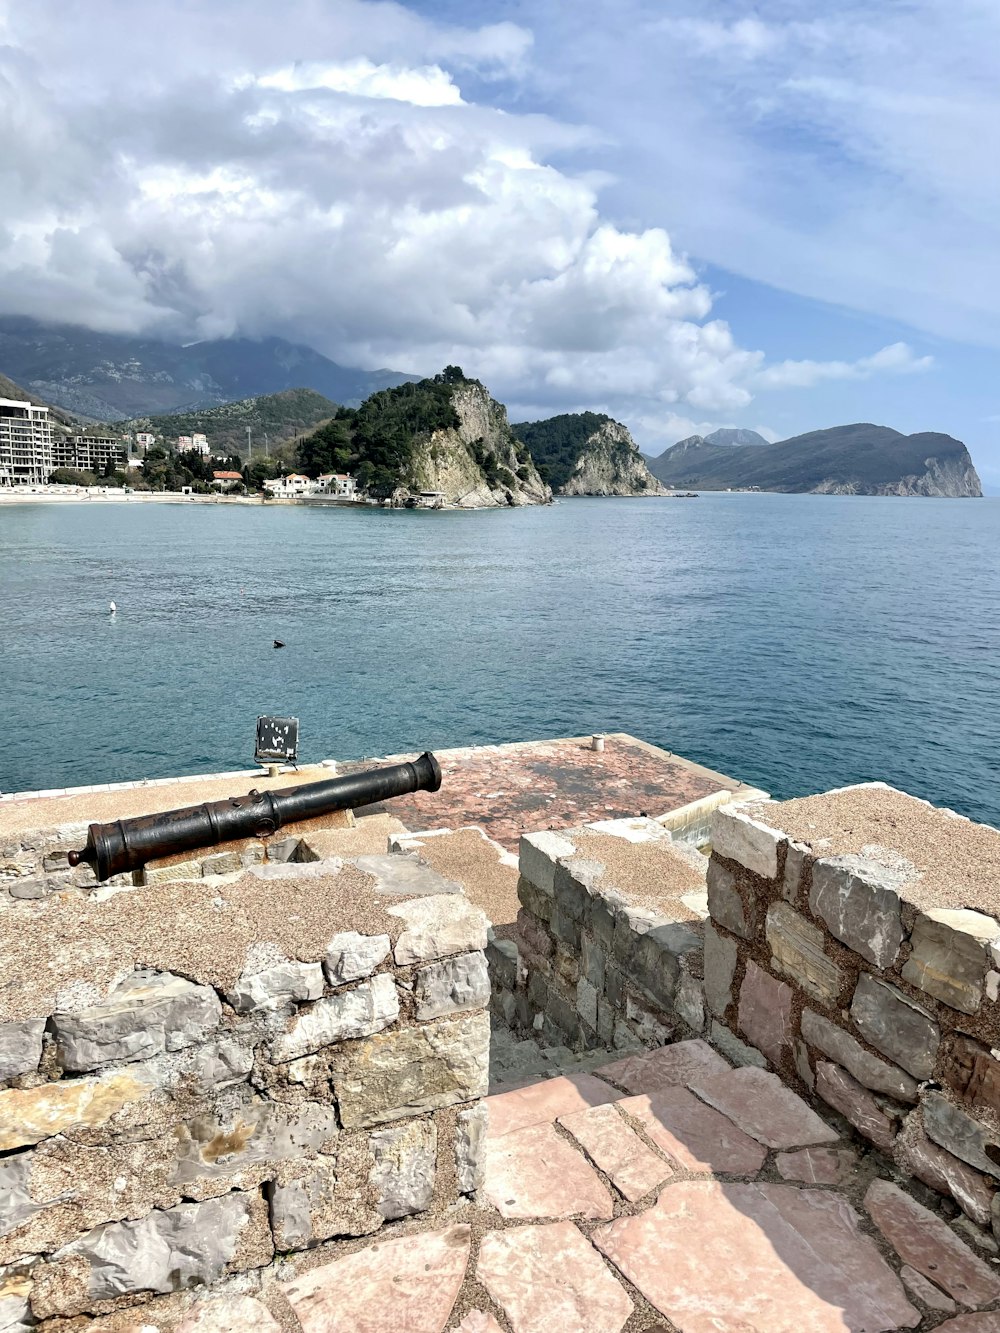 Eine Kanone an einer Wand mit Blick auf den Ozean